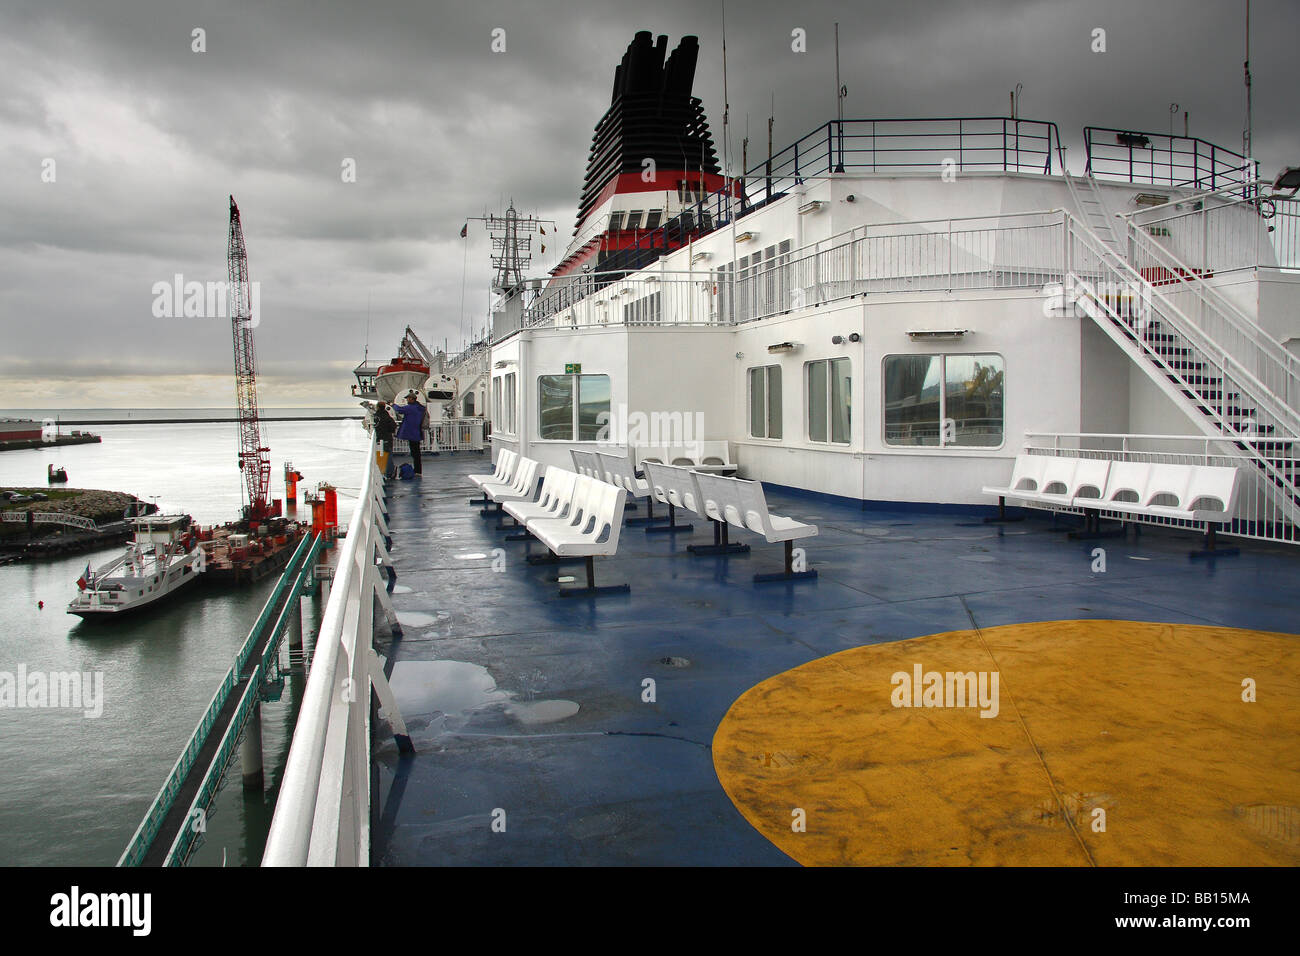 Un cross channel ferry au Havre sous un ciel d'orage avec une grue de voile d'un côté. France Banque D'Images